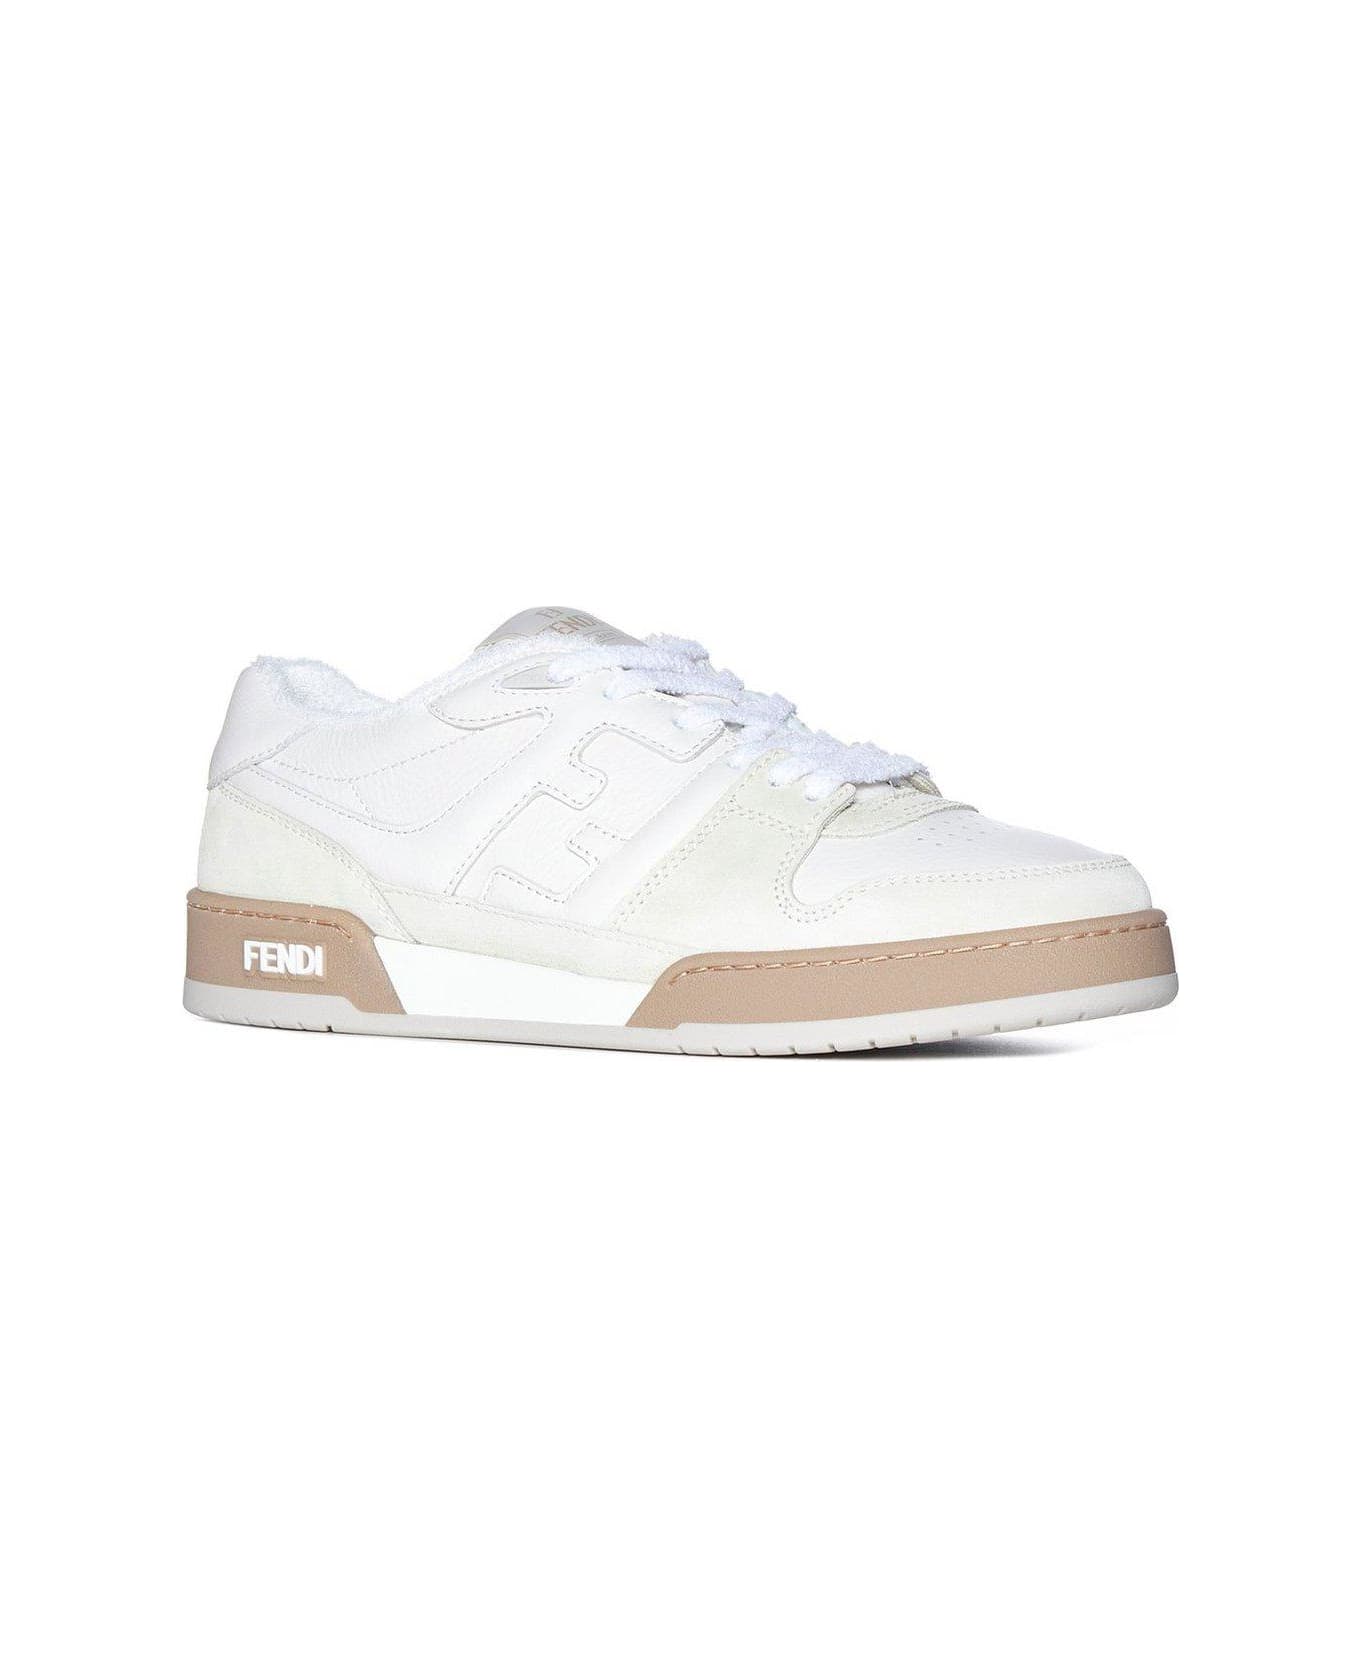 Fendi Match Lace-up Sneakers - Ice+bianco fendi+ice